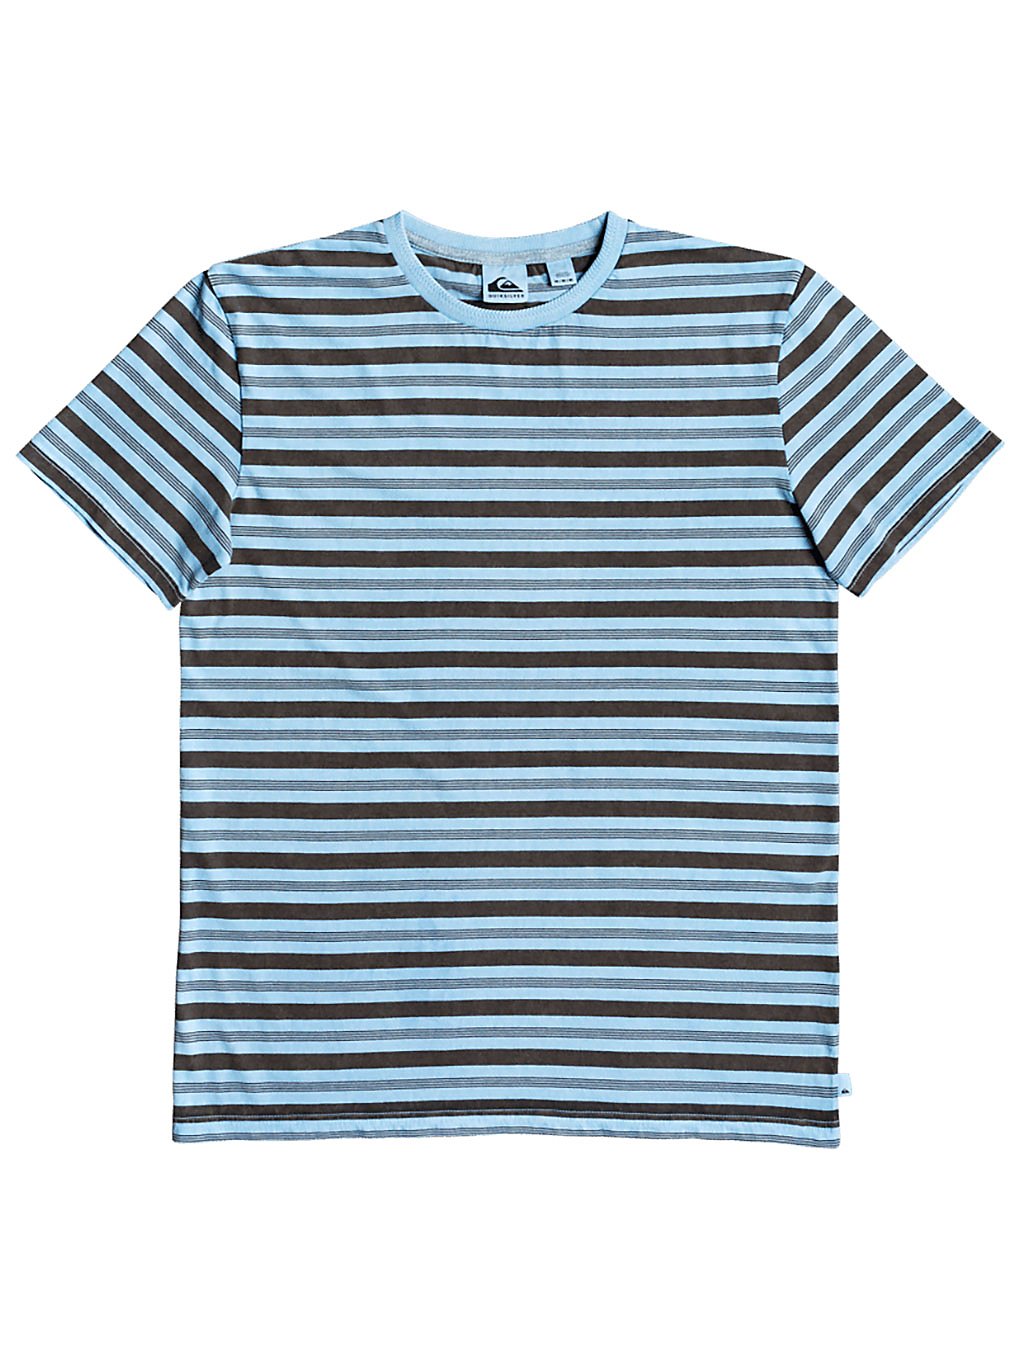 Quiksilver Capitoa T-Shirt capitoa airy blue